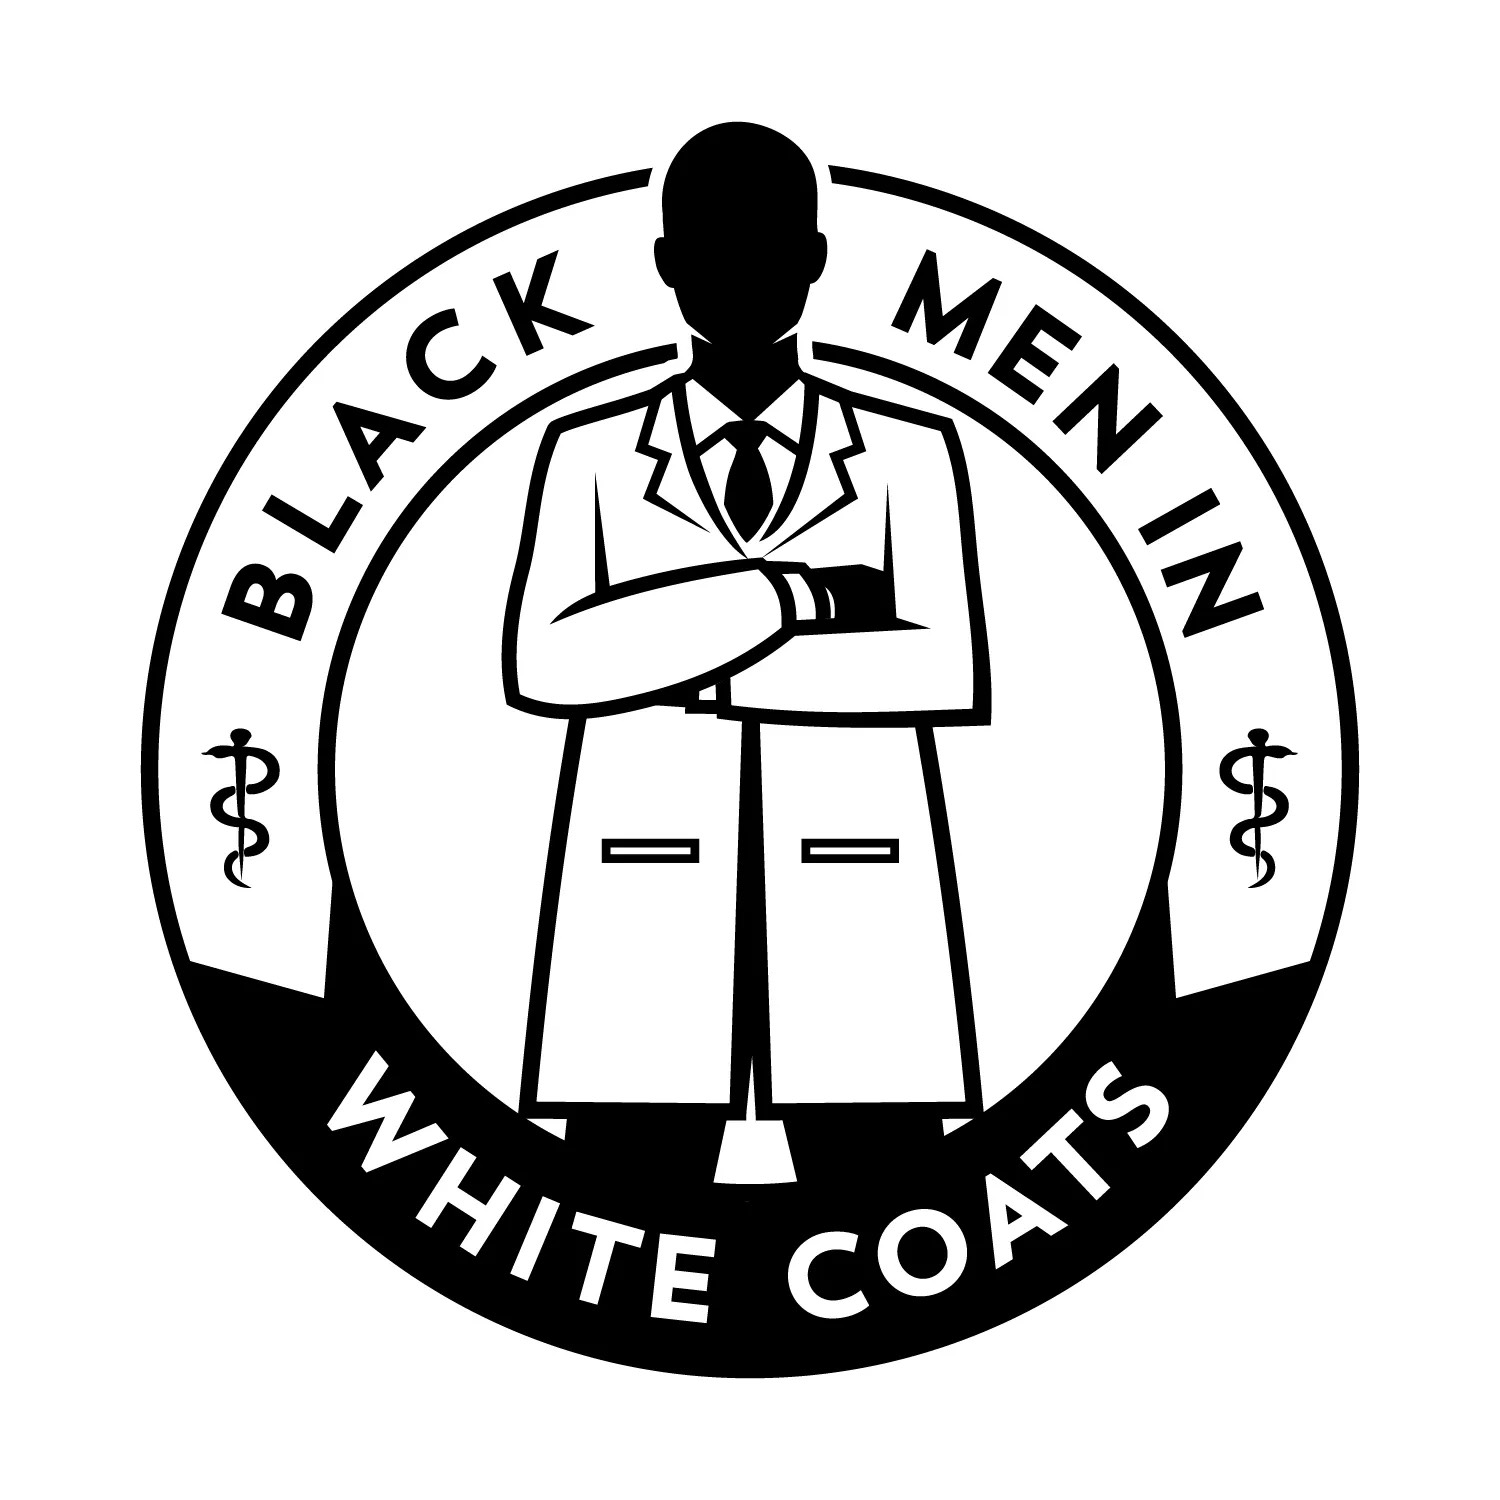 Black men in white coats